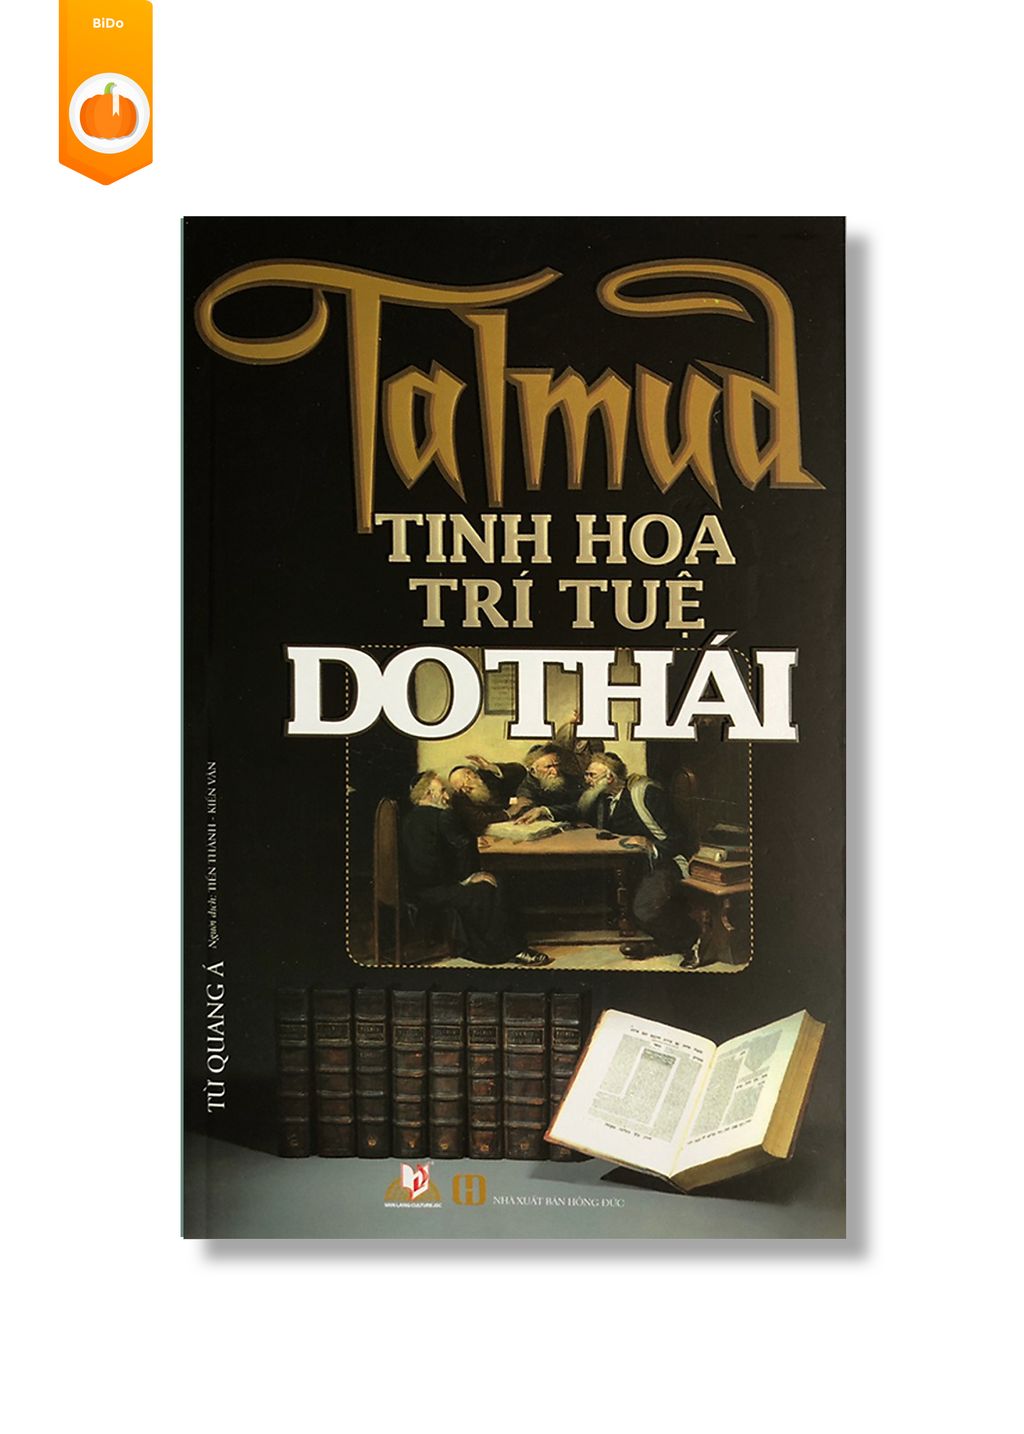 Talmud - Tinh Hoa Trí Tuệ Do Thái – Bido - Tiệm Sách Việt tại ÚC